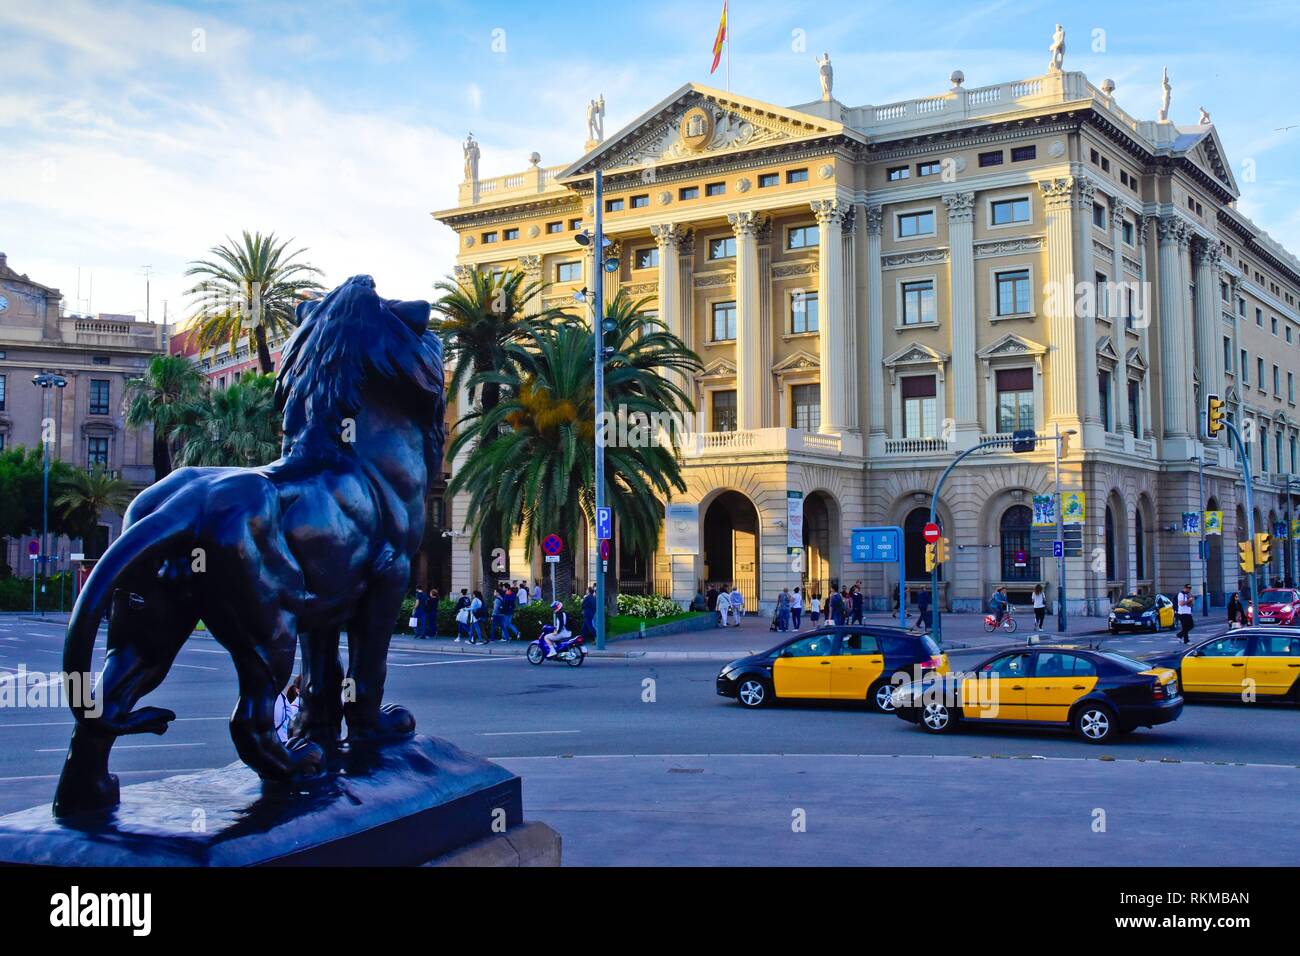 Lion statue am Sockel des Denkmals zu Christopher Columbus. Regierung Militar Gebäude. Militärisches Hauptquartier. Barcelona, Katalonien, Spanien, Europa Stockfoto